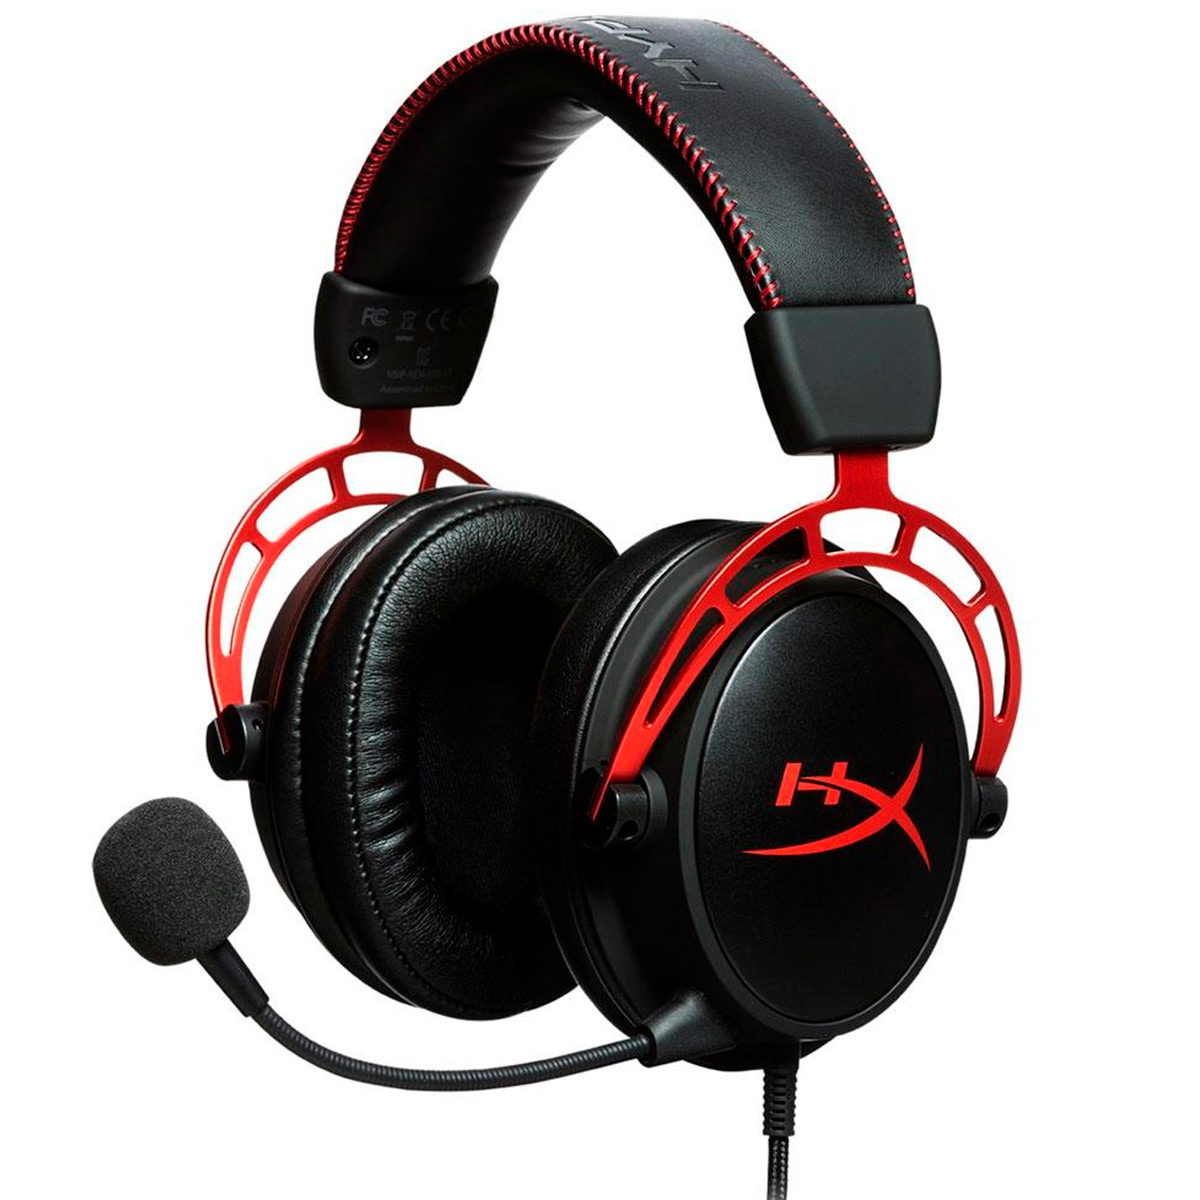 Headset Gamer Kingston HyperX Cloud Alpha - Cabo e Microfone Destacável - Conector P2 - HX-HSCA-RDAM